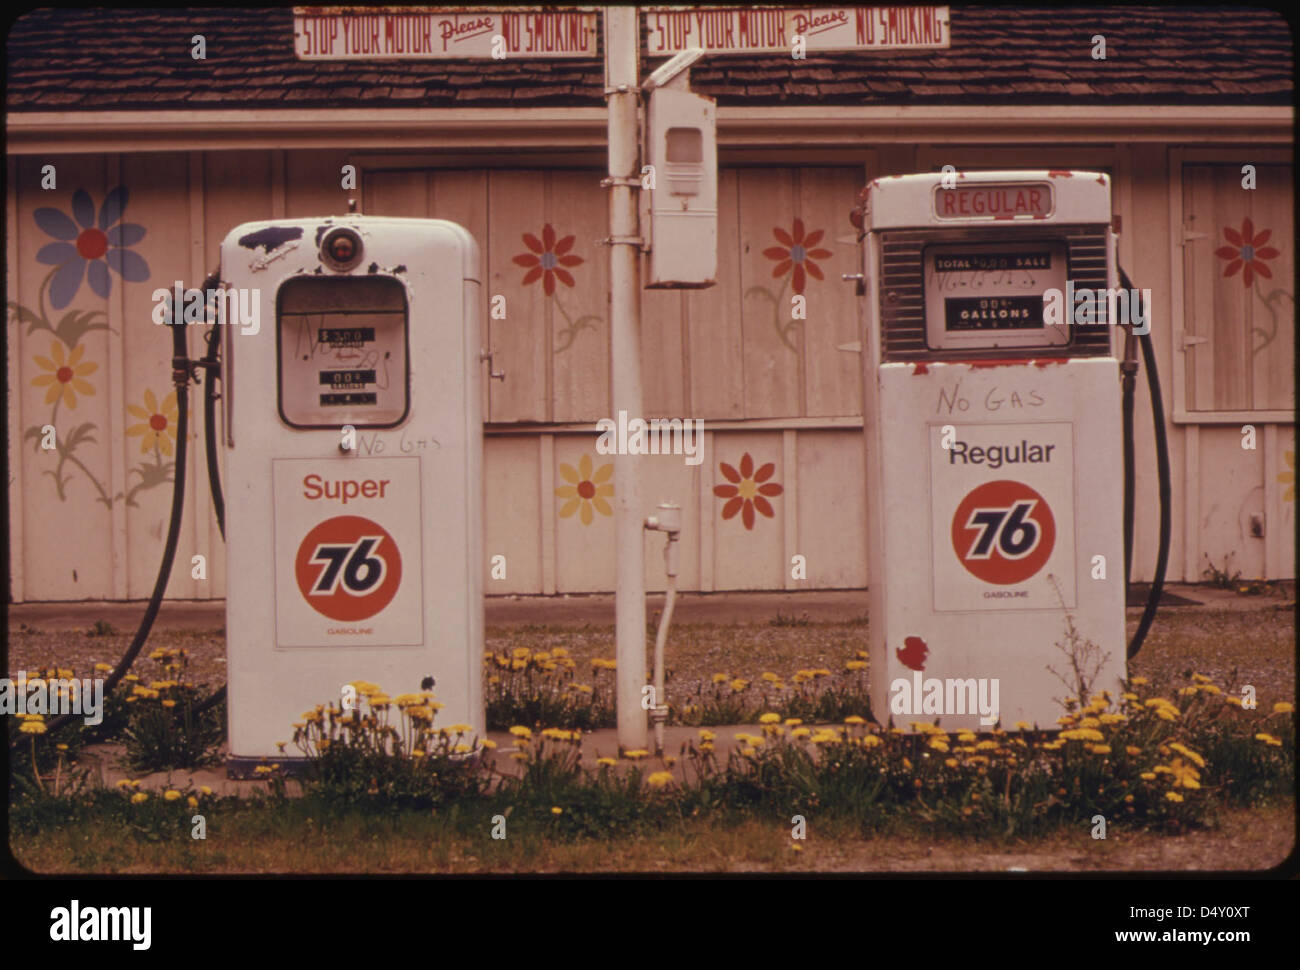 Les concessionnaires indépendants et les concessionnaires de grandes compagnies pétrolières ont commencé à fermer certaines stations de façon permanente pendant la pénurie d'essence à l'hiver 1973-74...04/1974 Banque D'Images